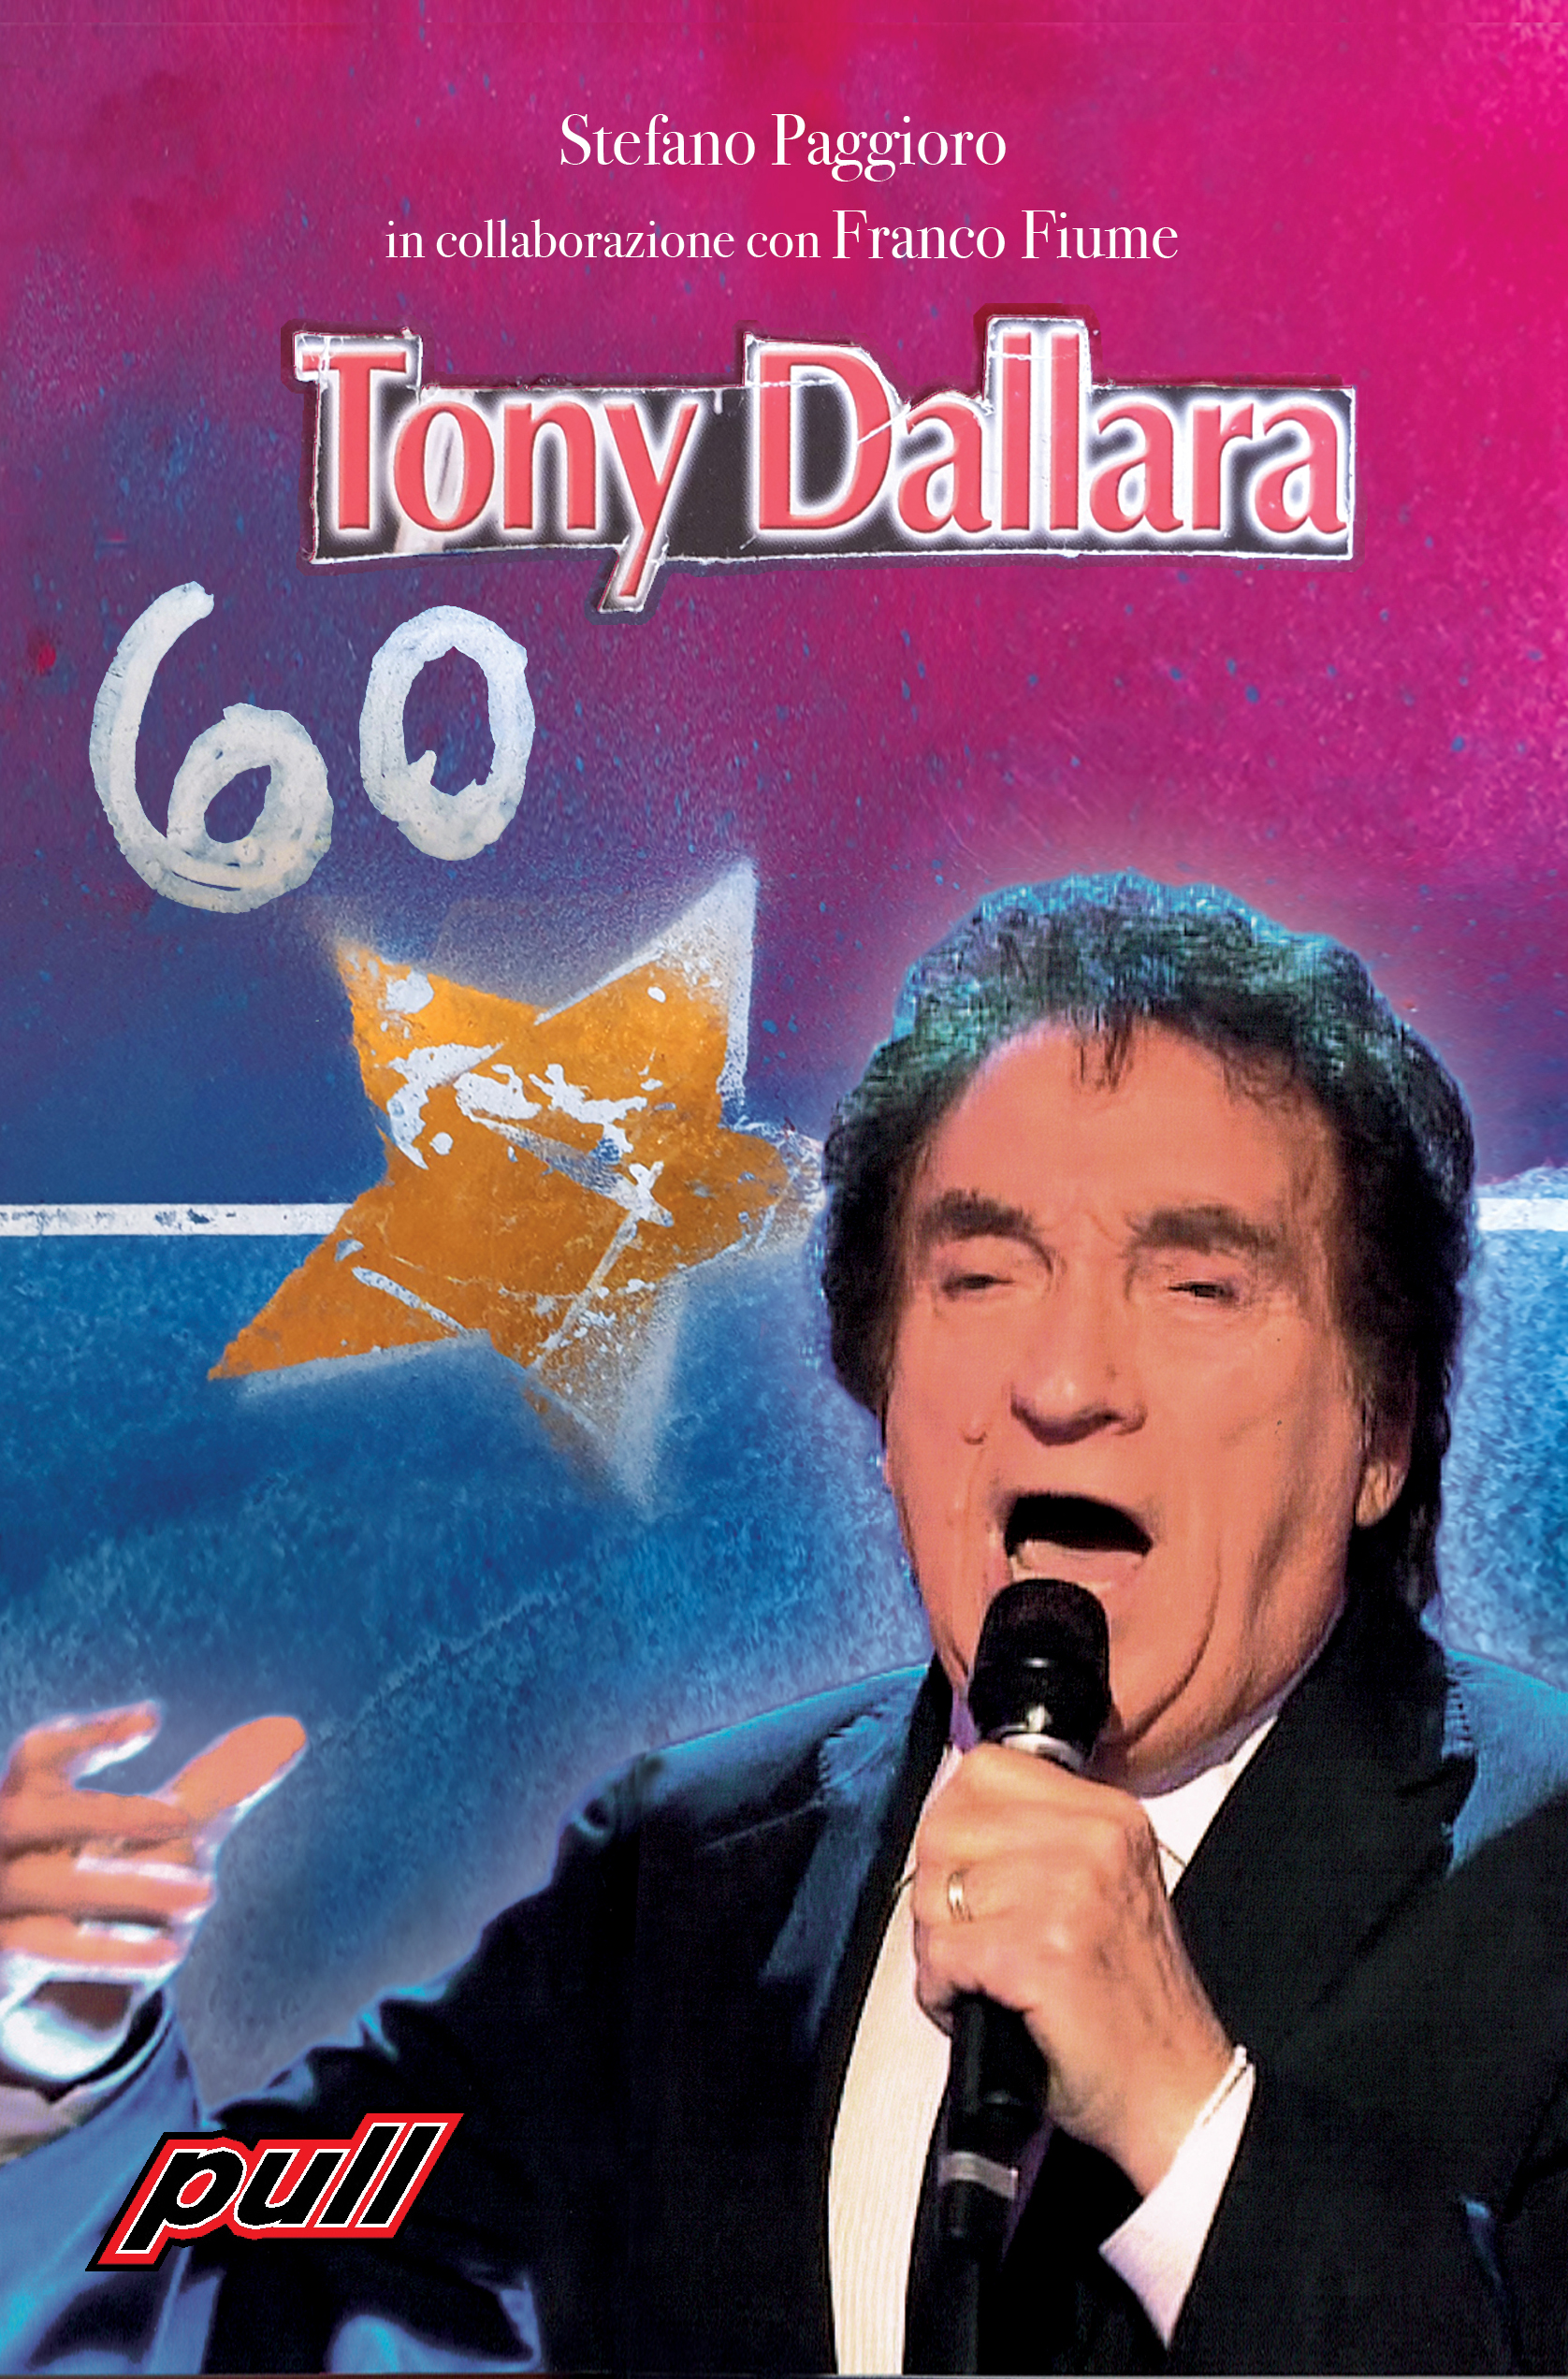 TONY DALLARA - 60